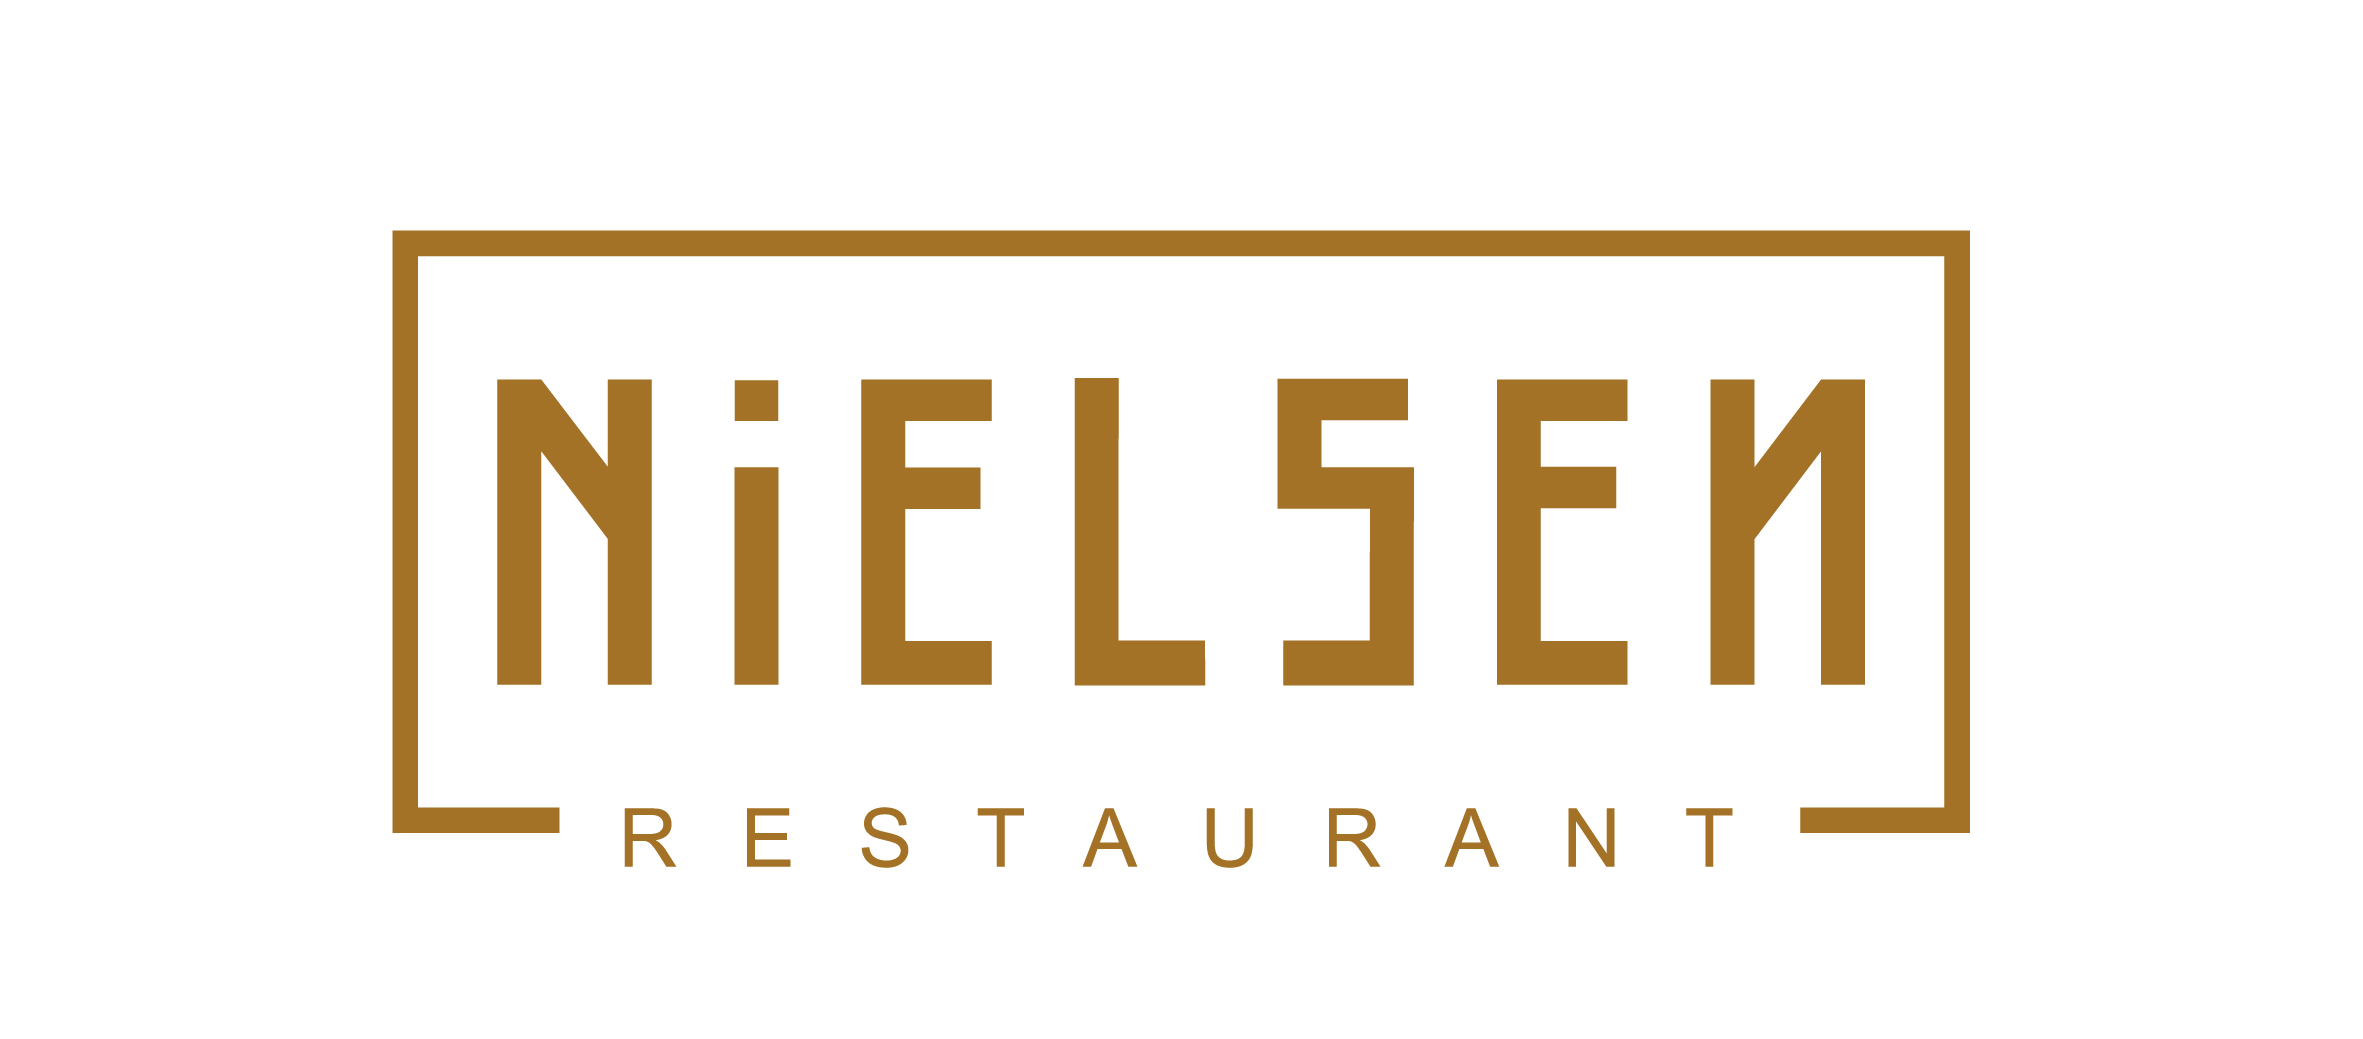 Nielsen restaurant